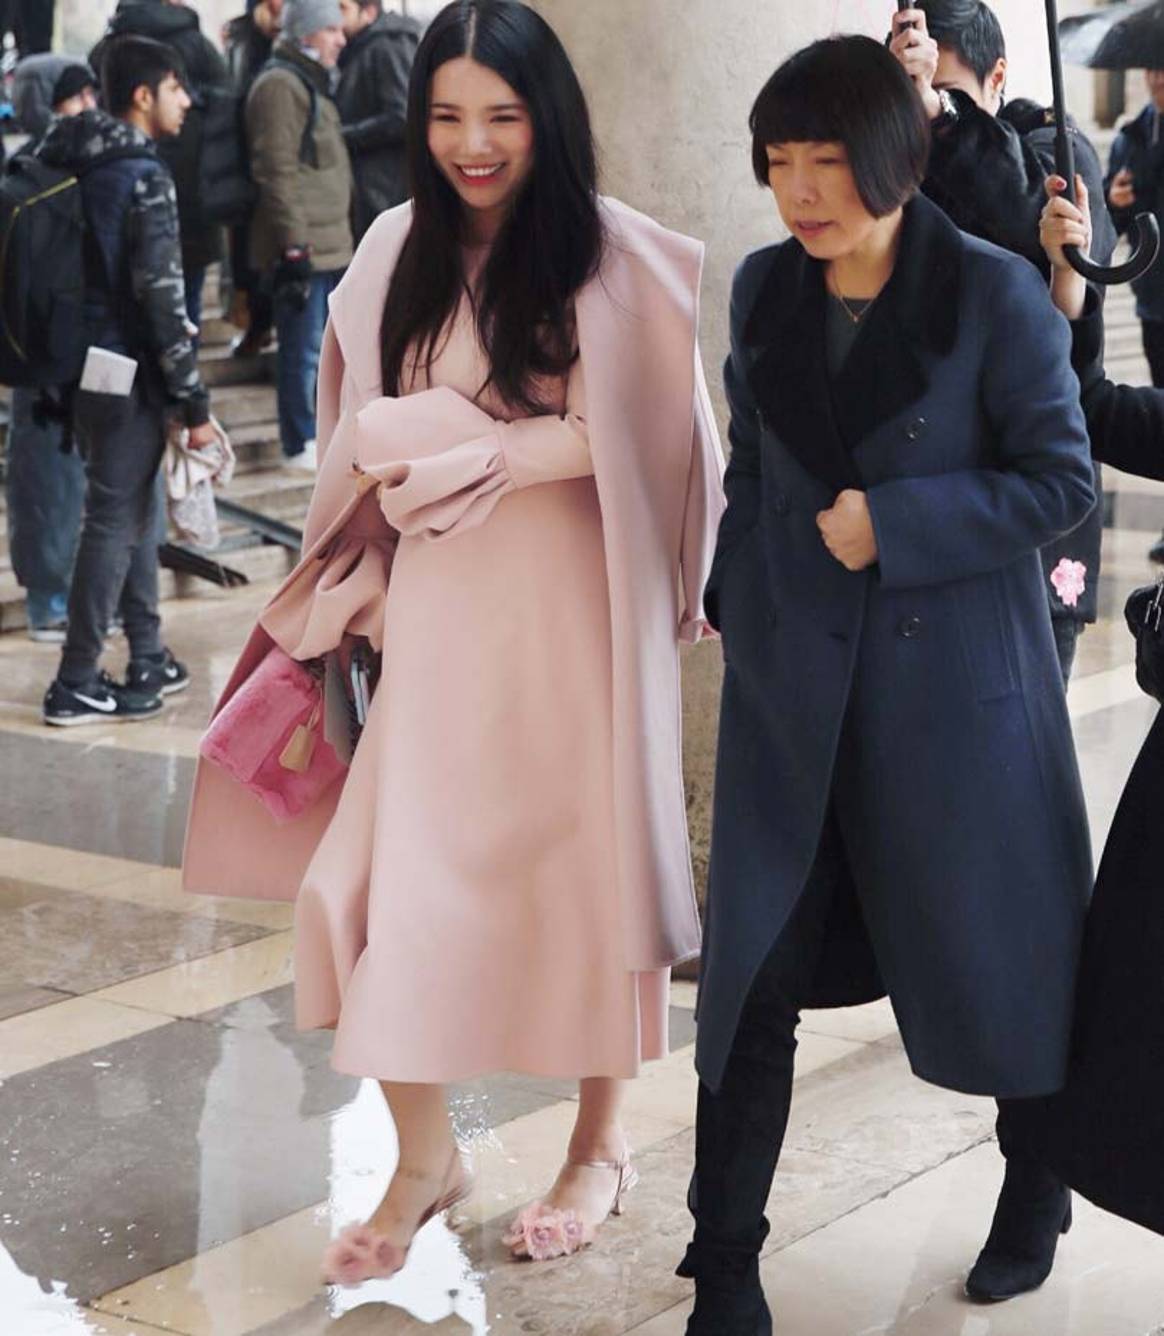 Chinese fashion investor Wendy Yu's take on London Fashion Week AW18